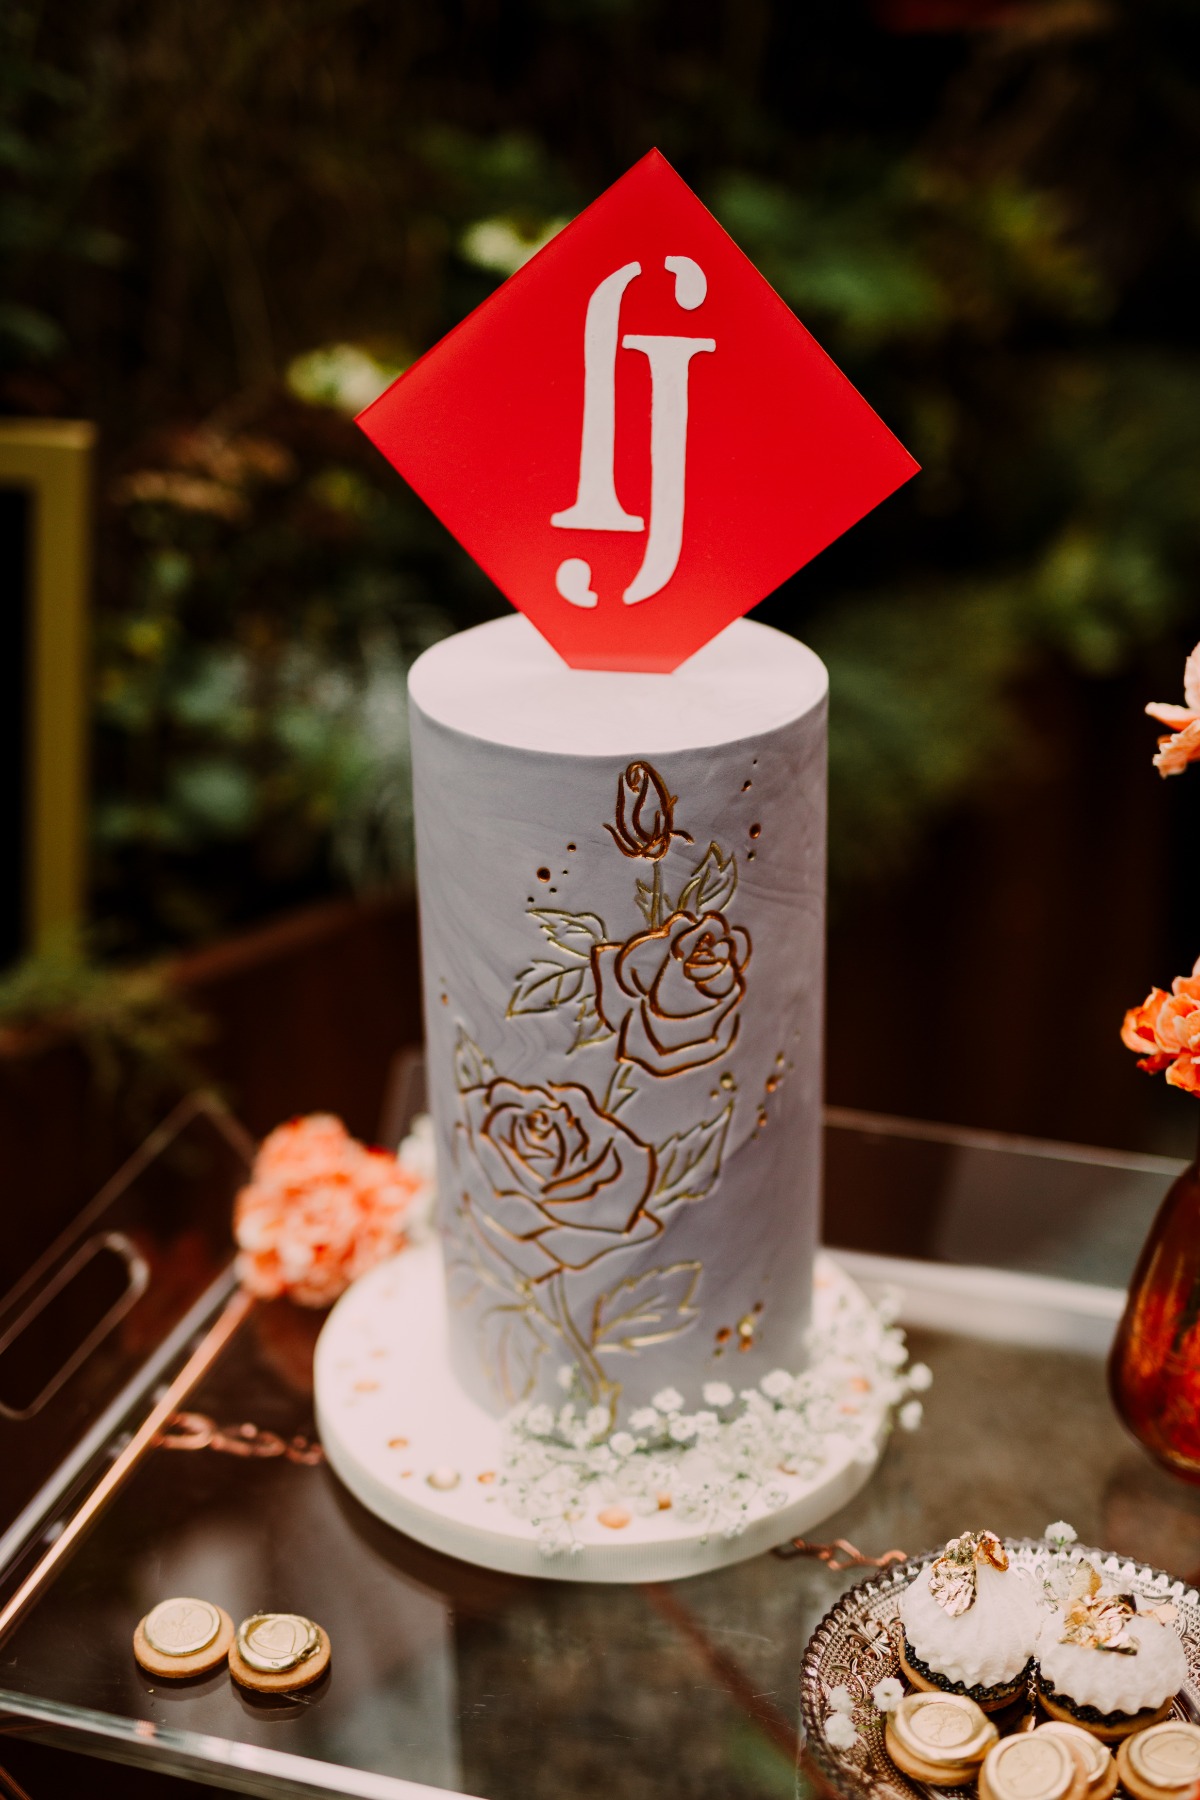 Wedding cake with rose engraving